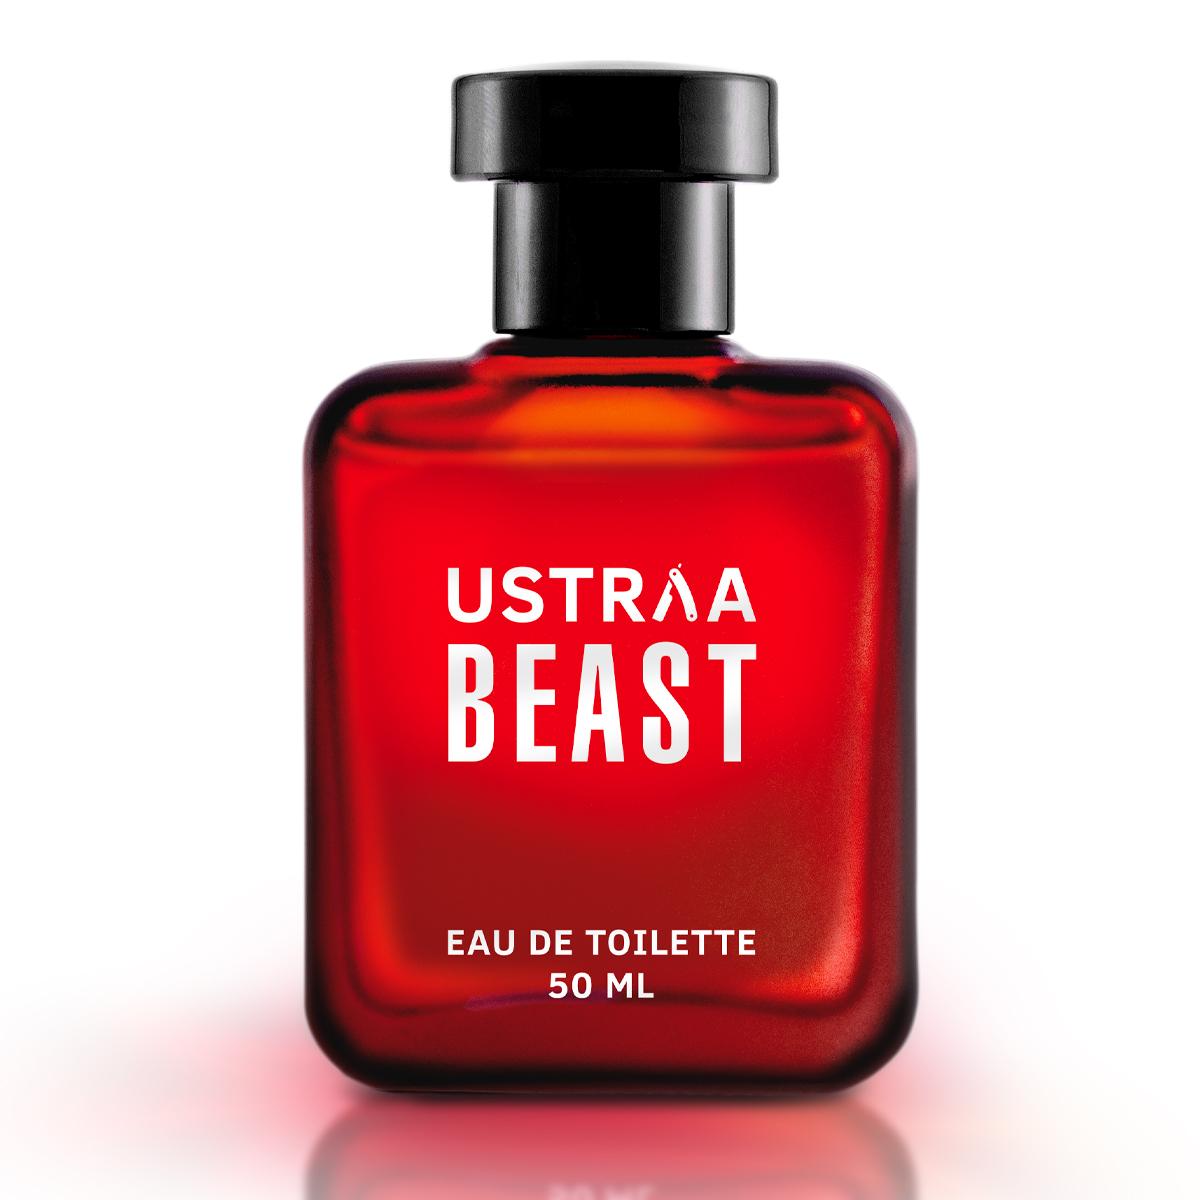 Ustraa Beast EDT 50ml - Perfume for Men